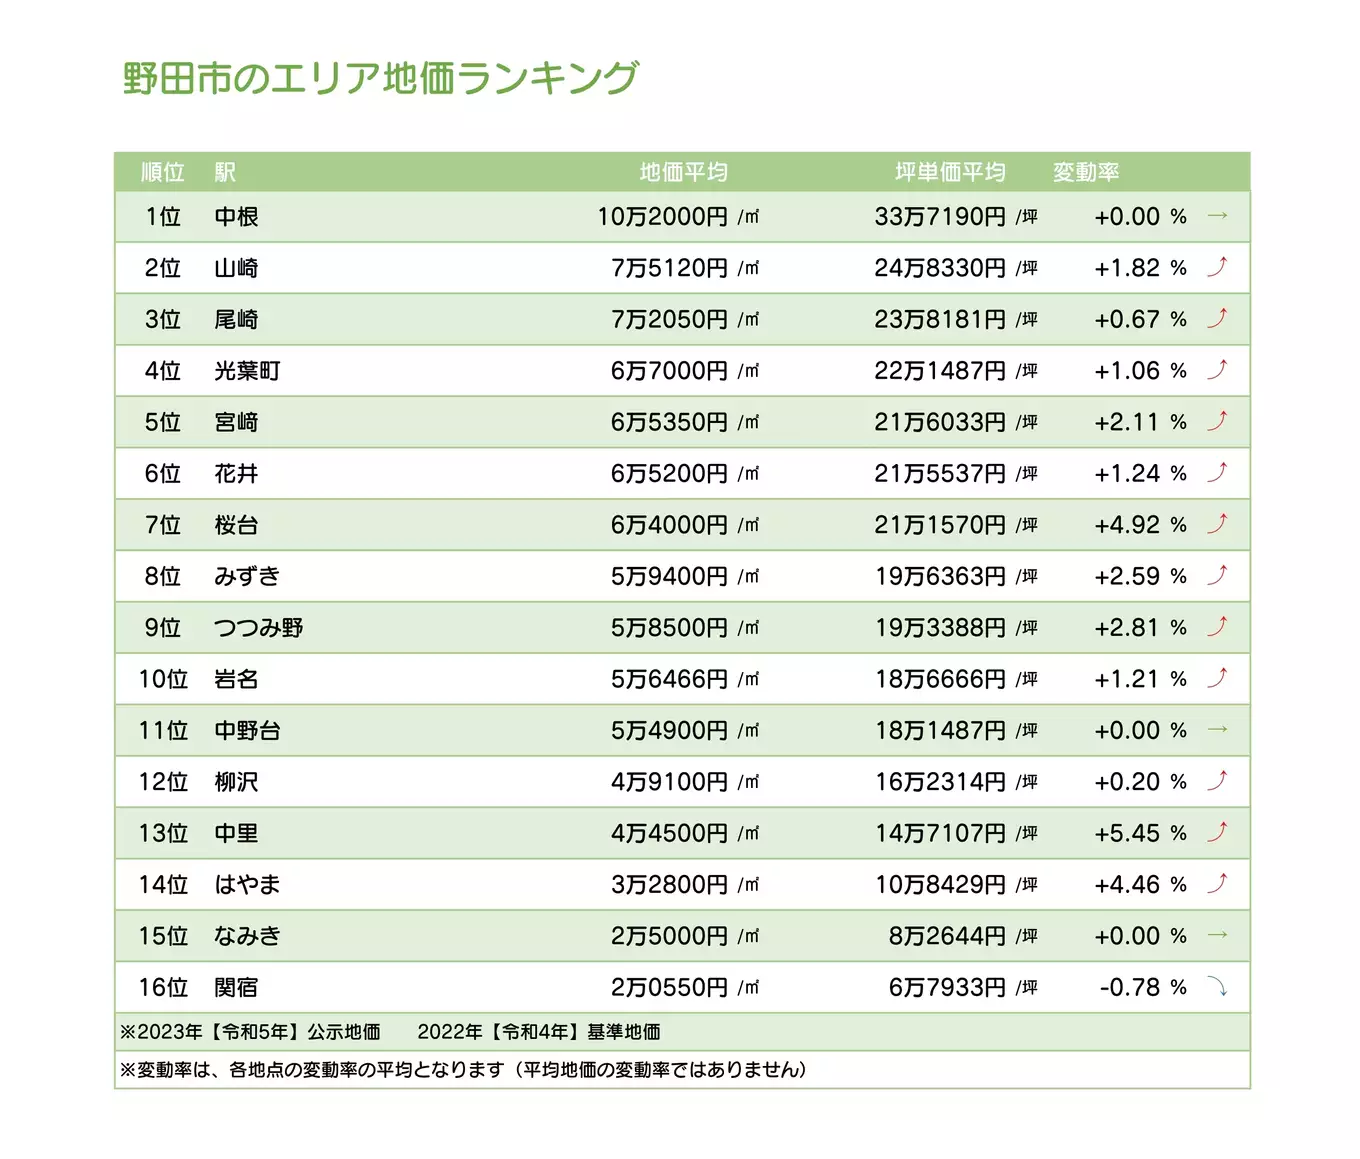 野田市内のエリア地価ランキング表